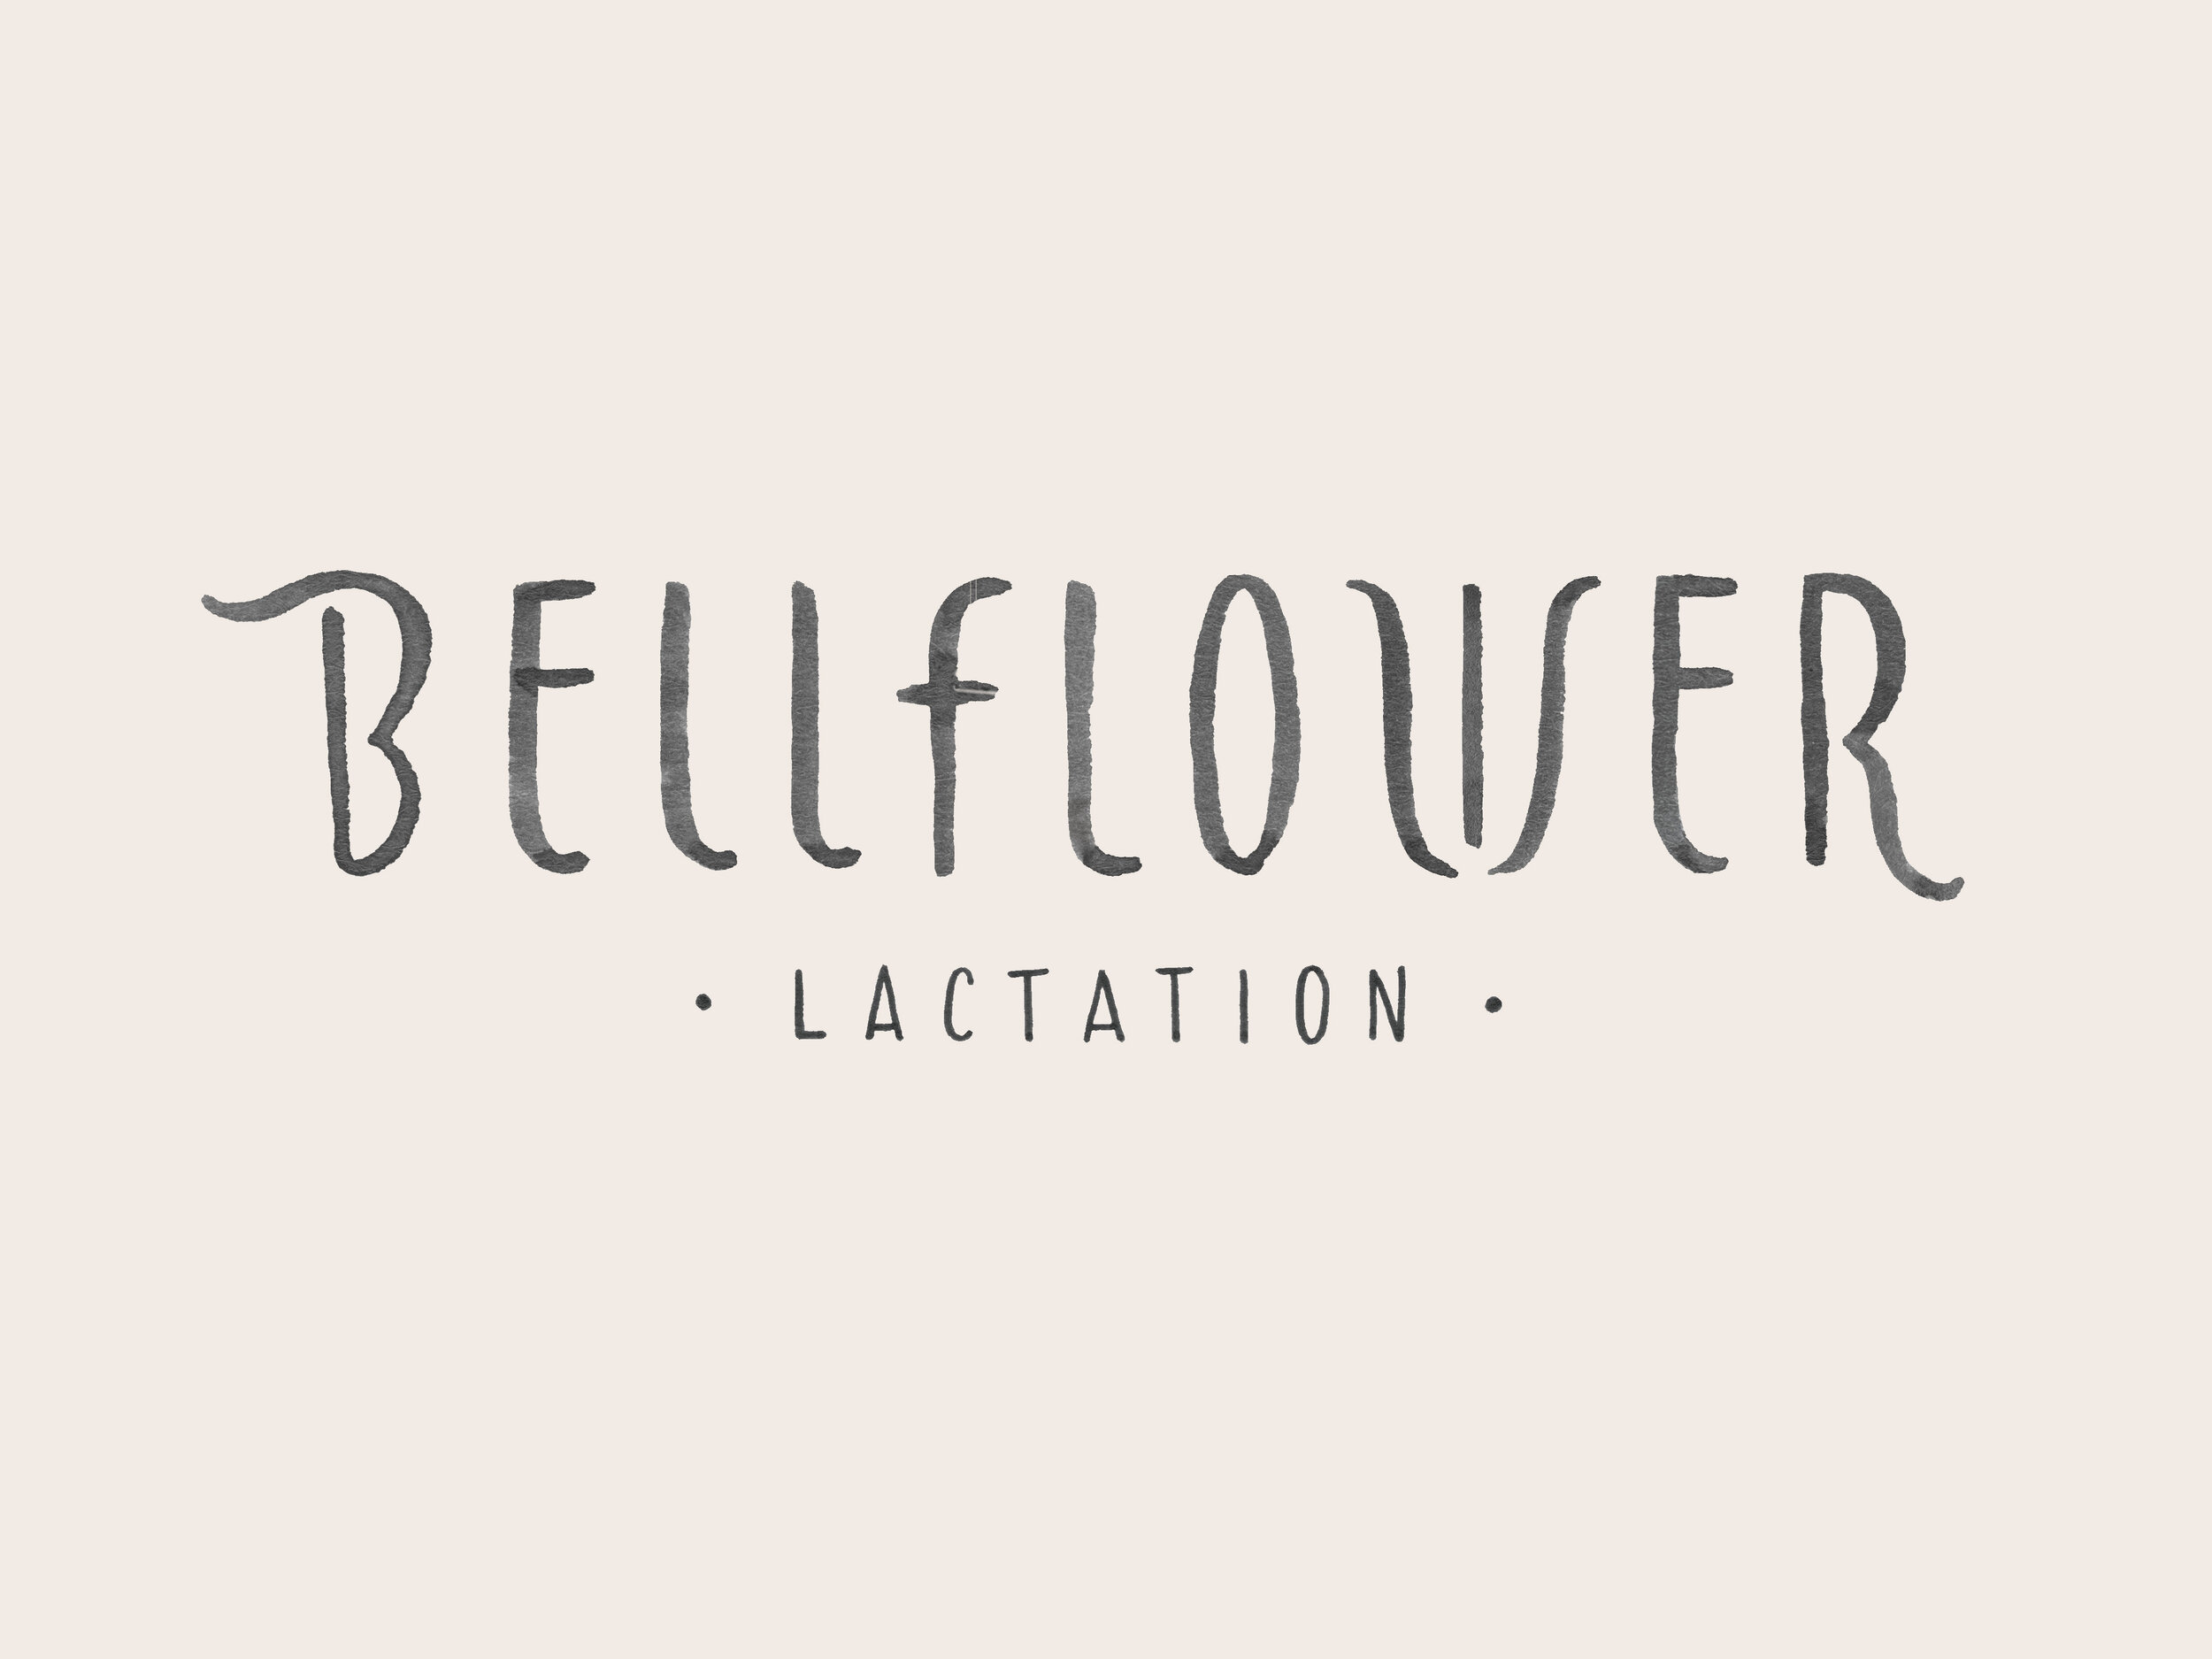 bellflower-lactation-logo_erinellis.jpg